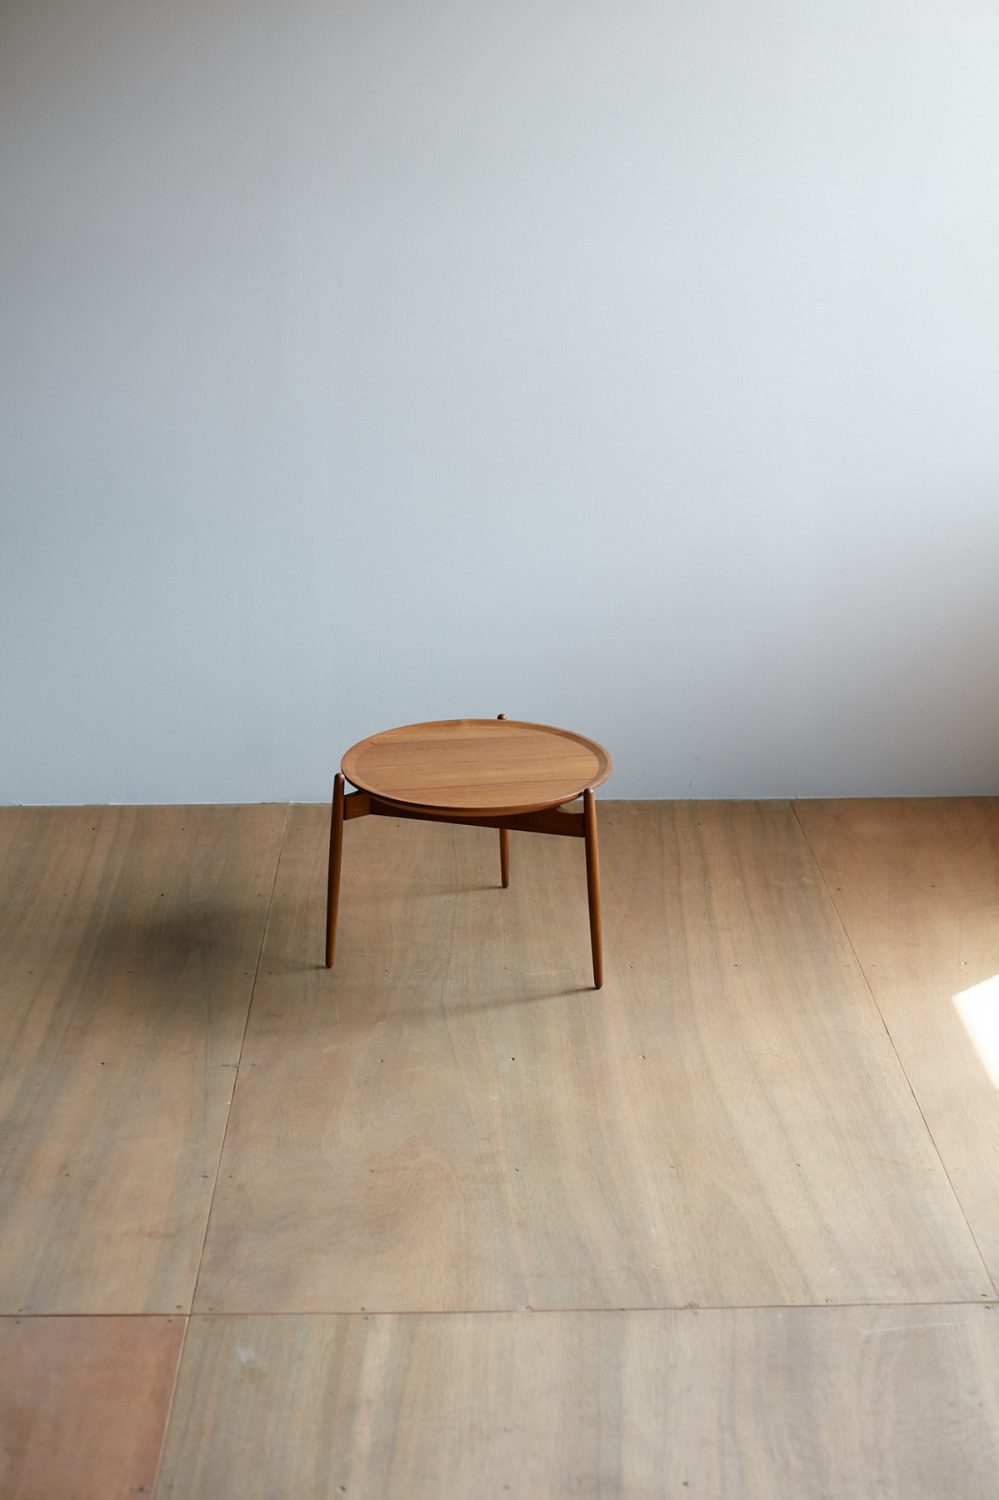 Zen table